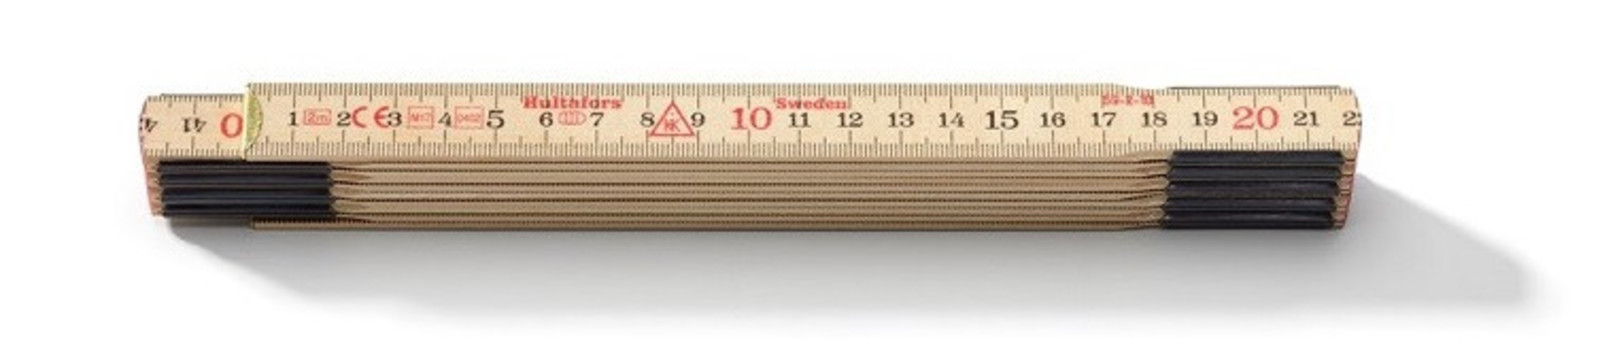 Drevený skladací meter Hultafors 2m (10 lamien) - veľkosť: 12 lamiel